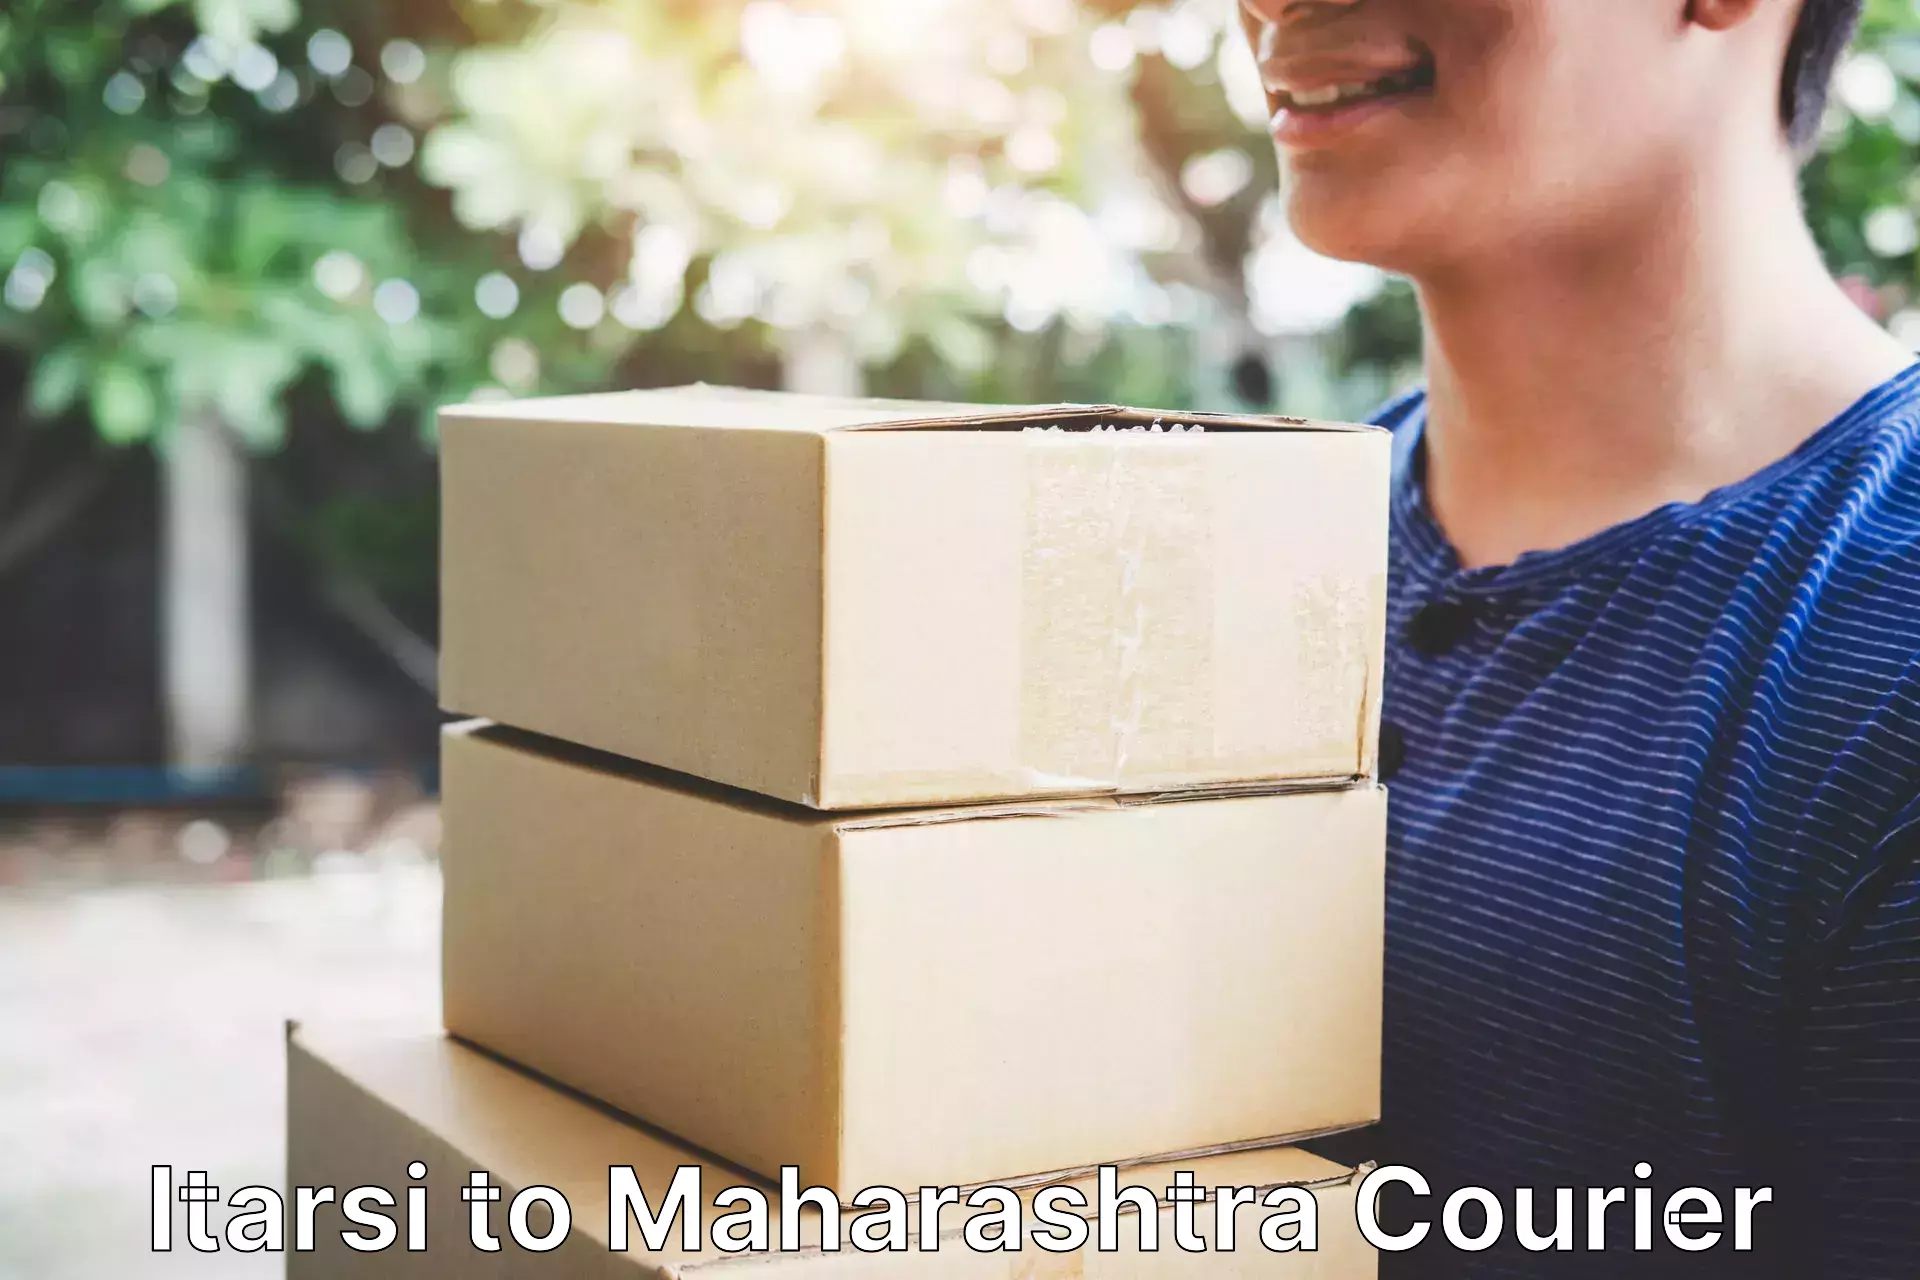 Efficient parcel service Itarsi to Maharashtra